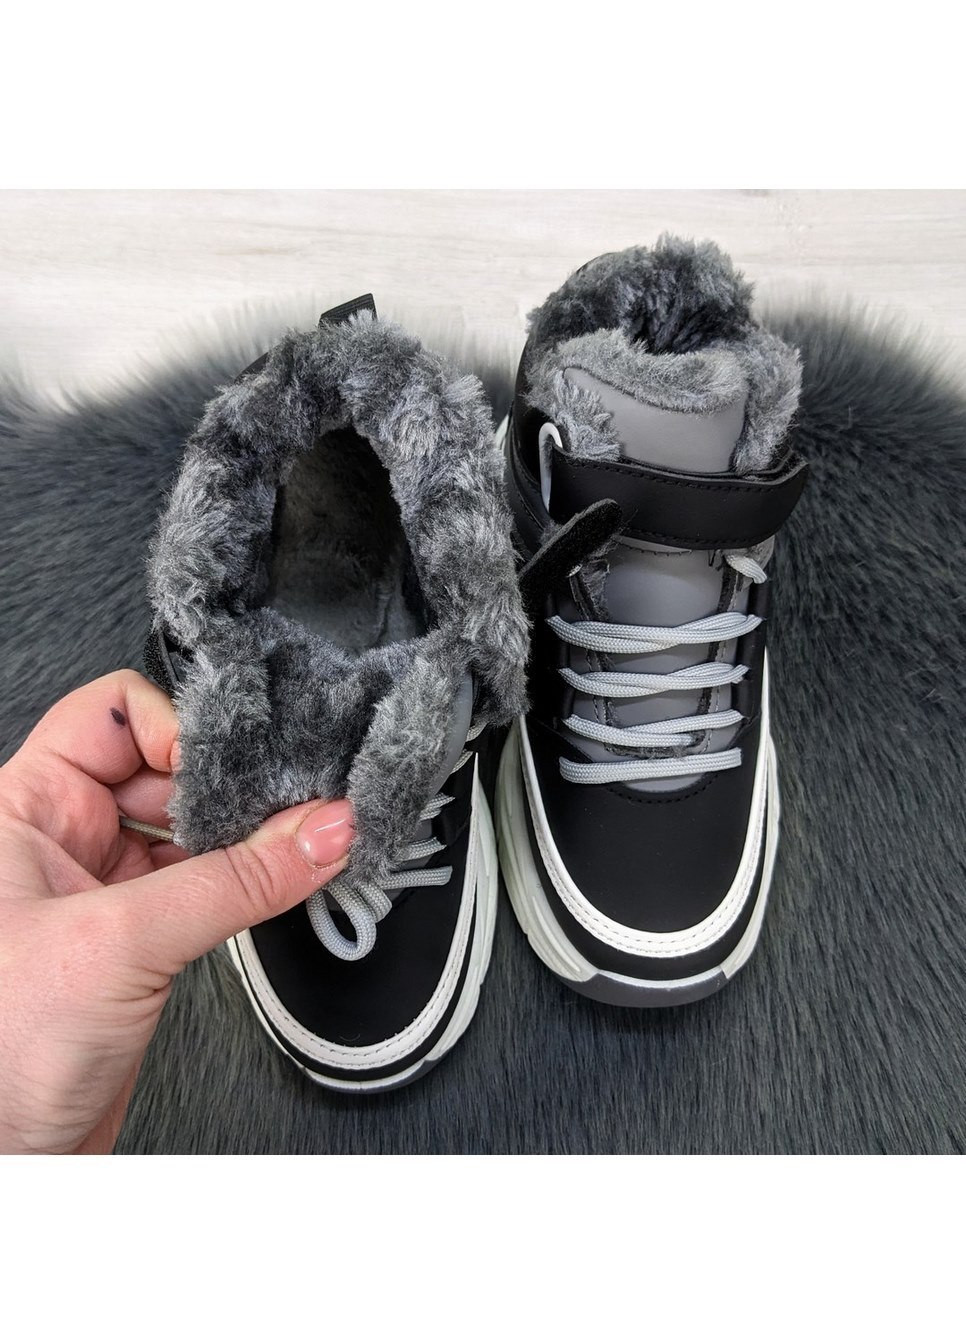 Серые повседневные зимние ботинки подростковые зимние для девочки Канарейка